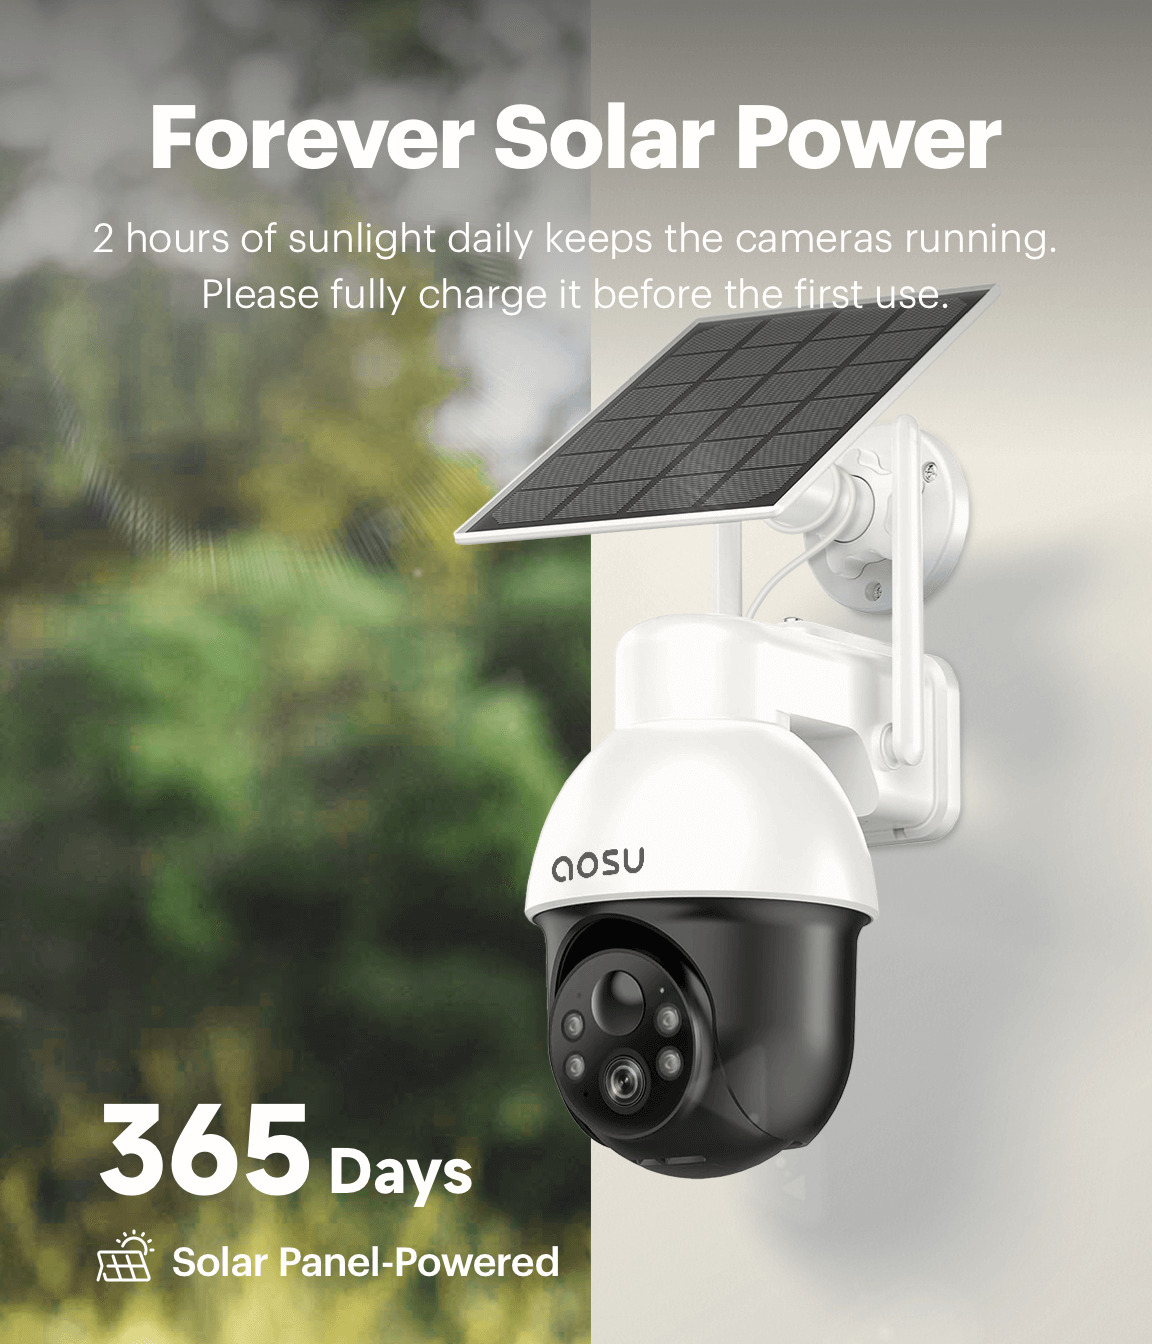 Forever solar power